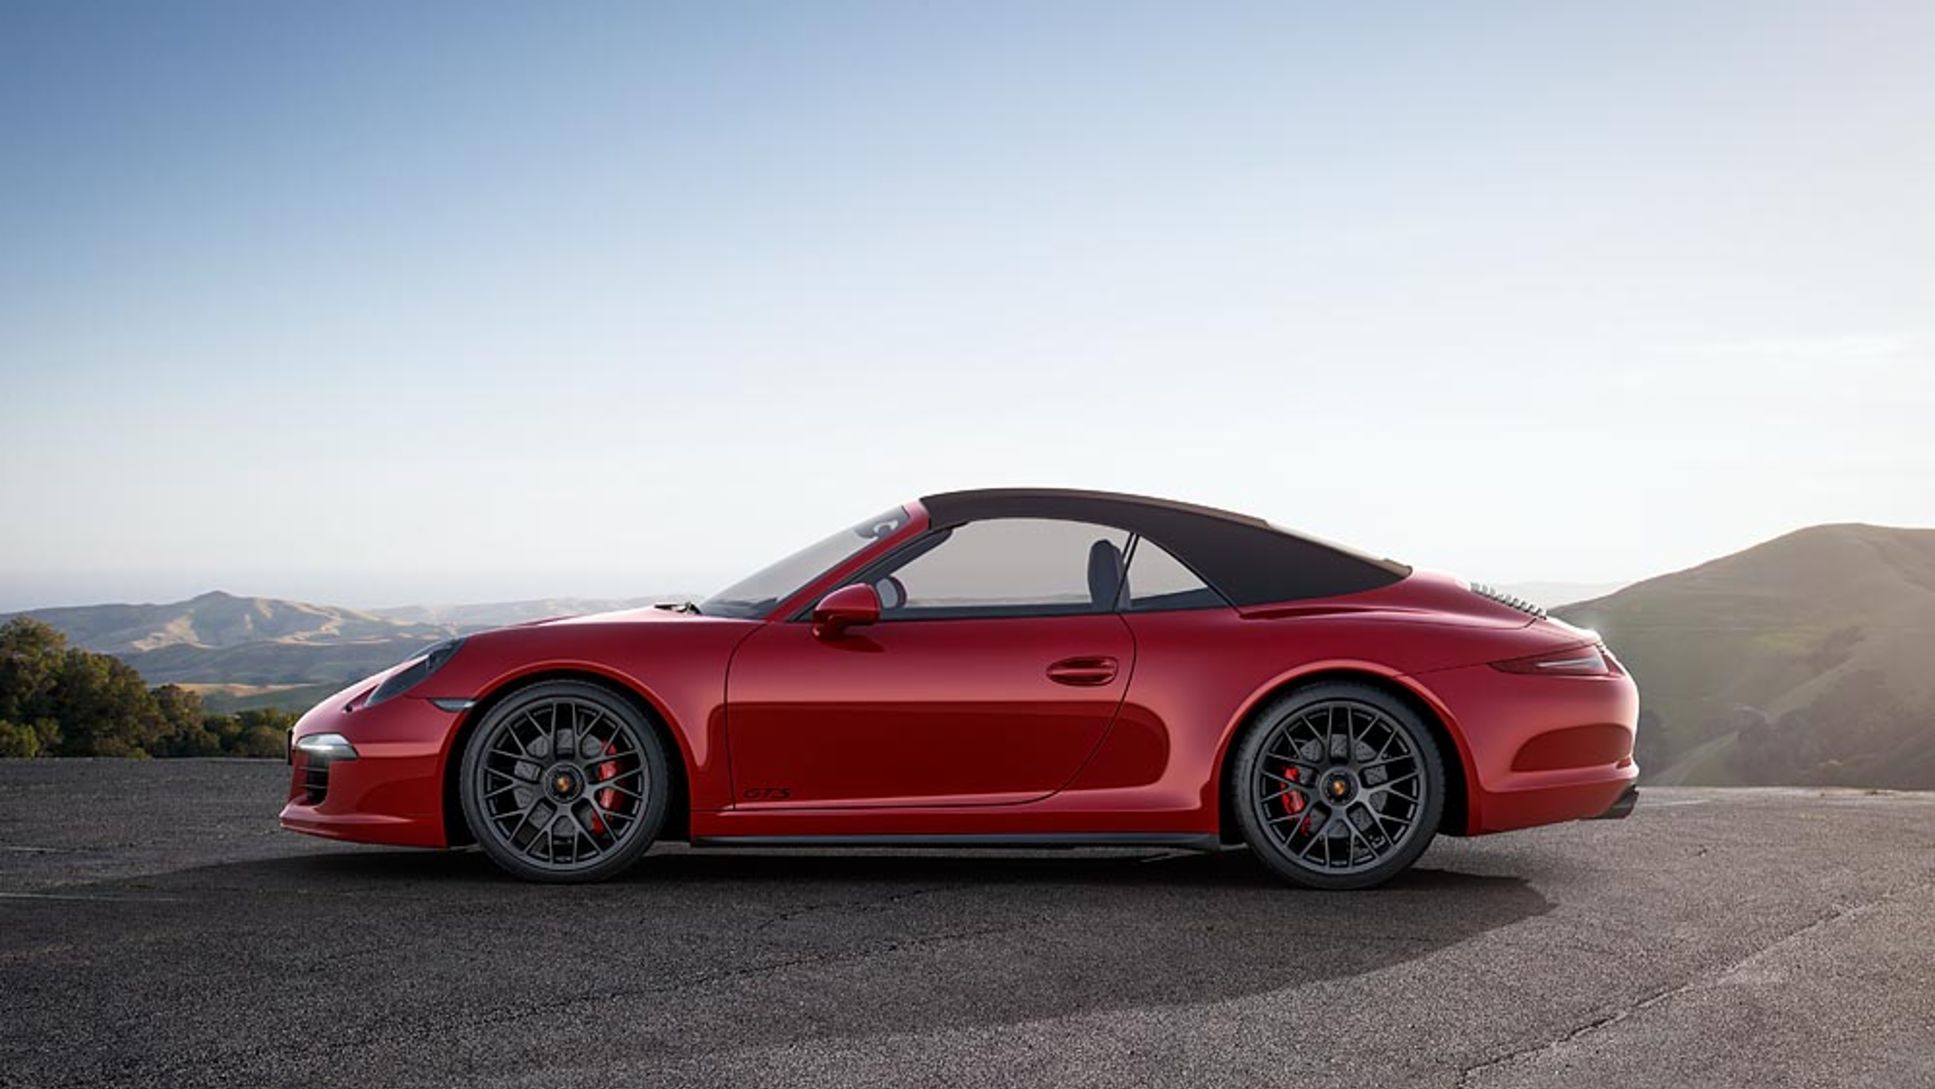 The new Porsche 911 Carrera GTS models - Porsche Newsroom